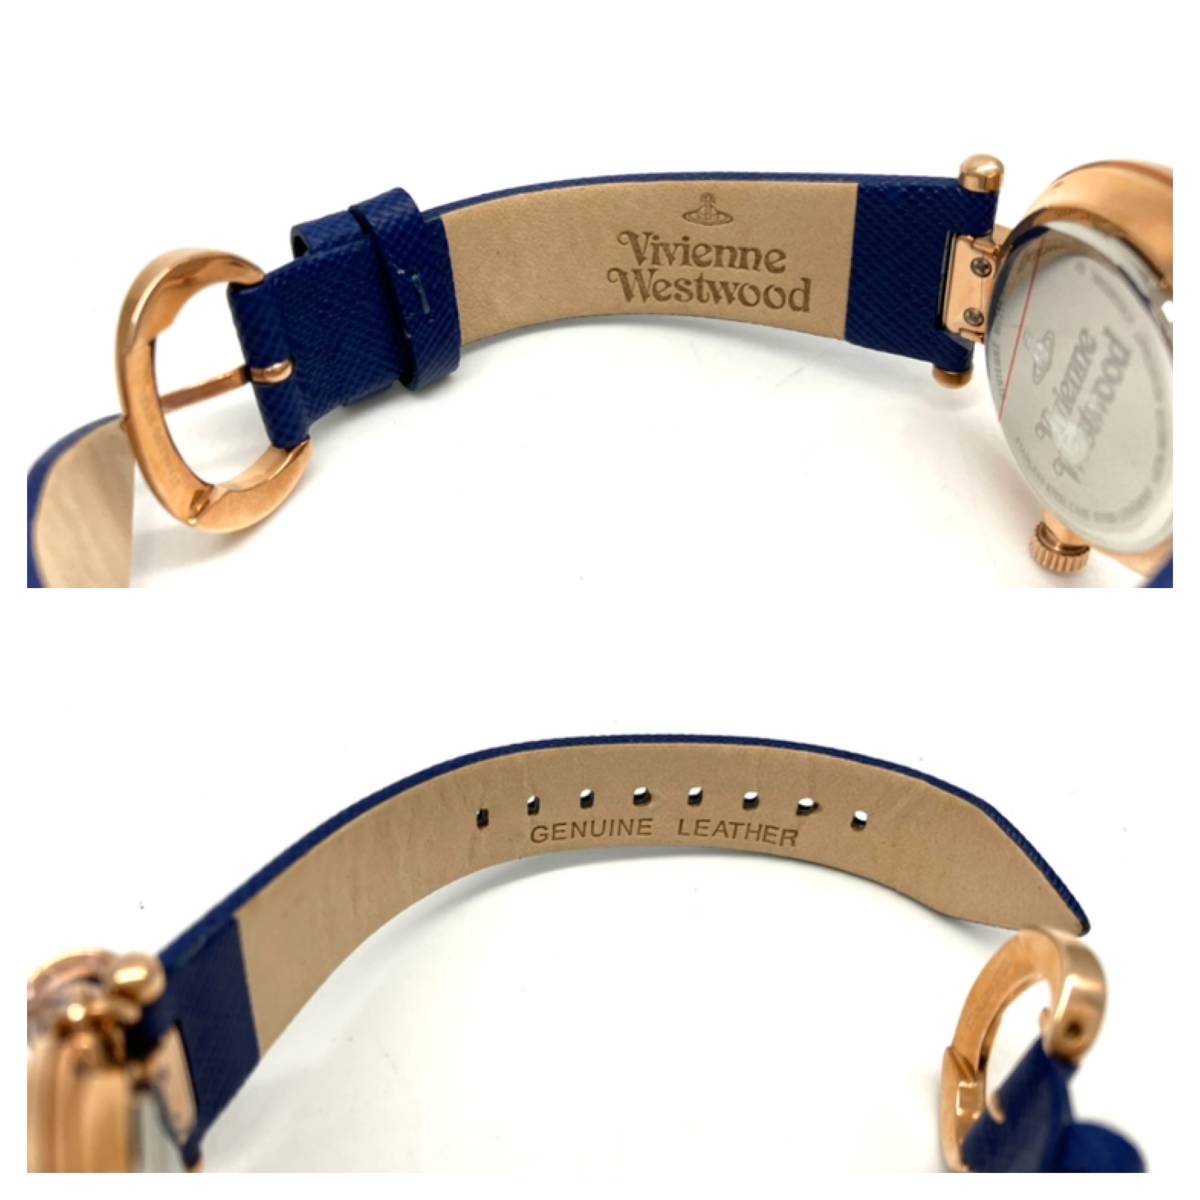  не использовался товар Vivienne Westwood VV006RSBL кварц наручные часы Vivienne Westwood женский серебряный циферблат очарование имеется с коробкой 